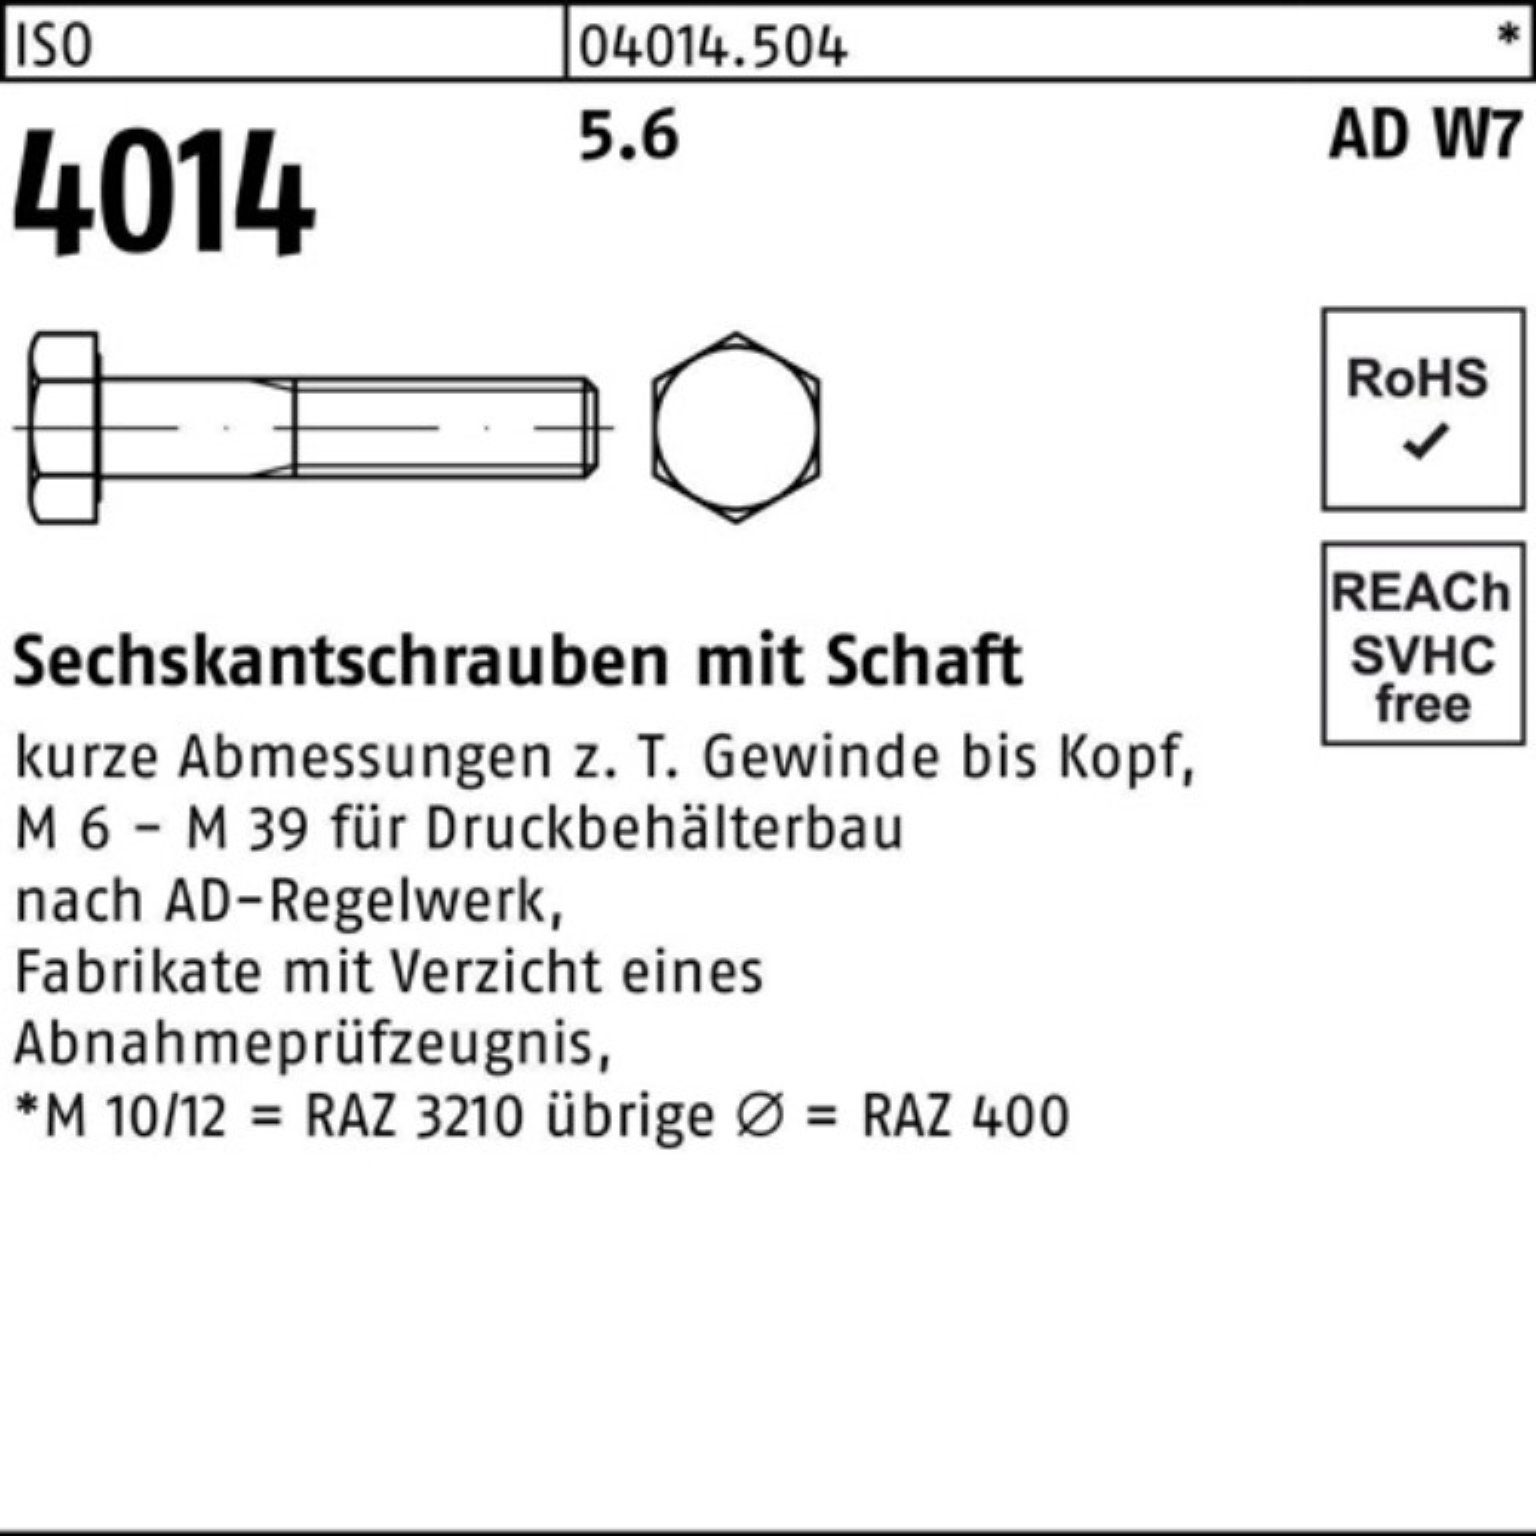 Stück Sechskantschraube Schaft Bufab Sechskantschraube 160 Pack 10 M24x 5.6 4014 W7 ISO 100er